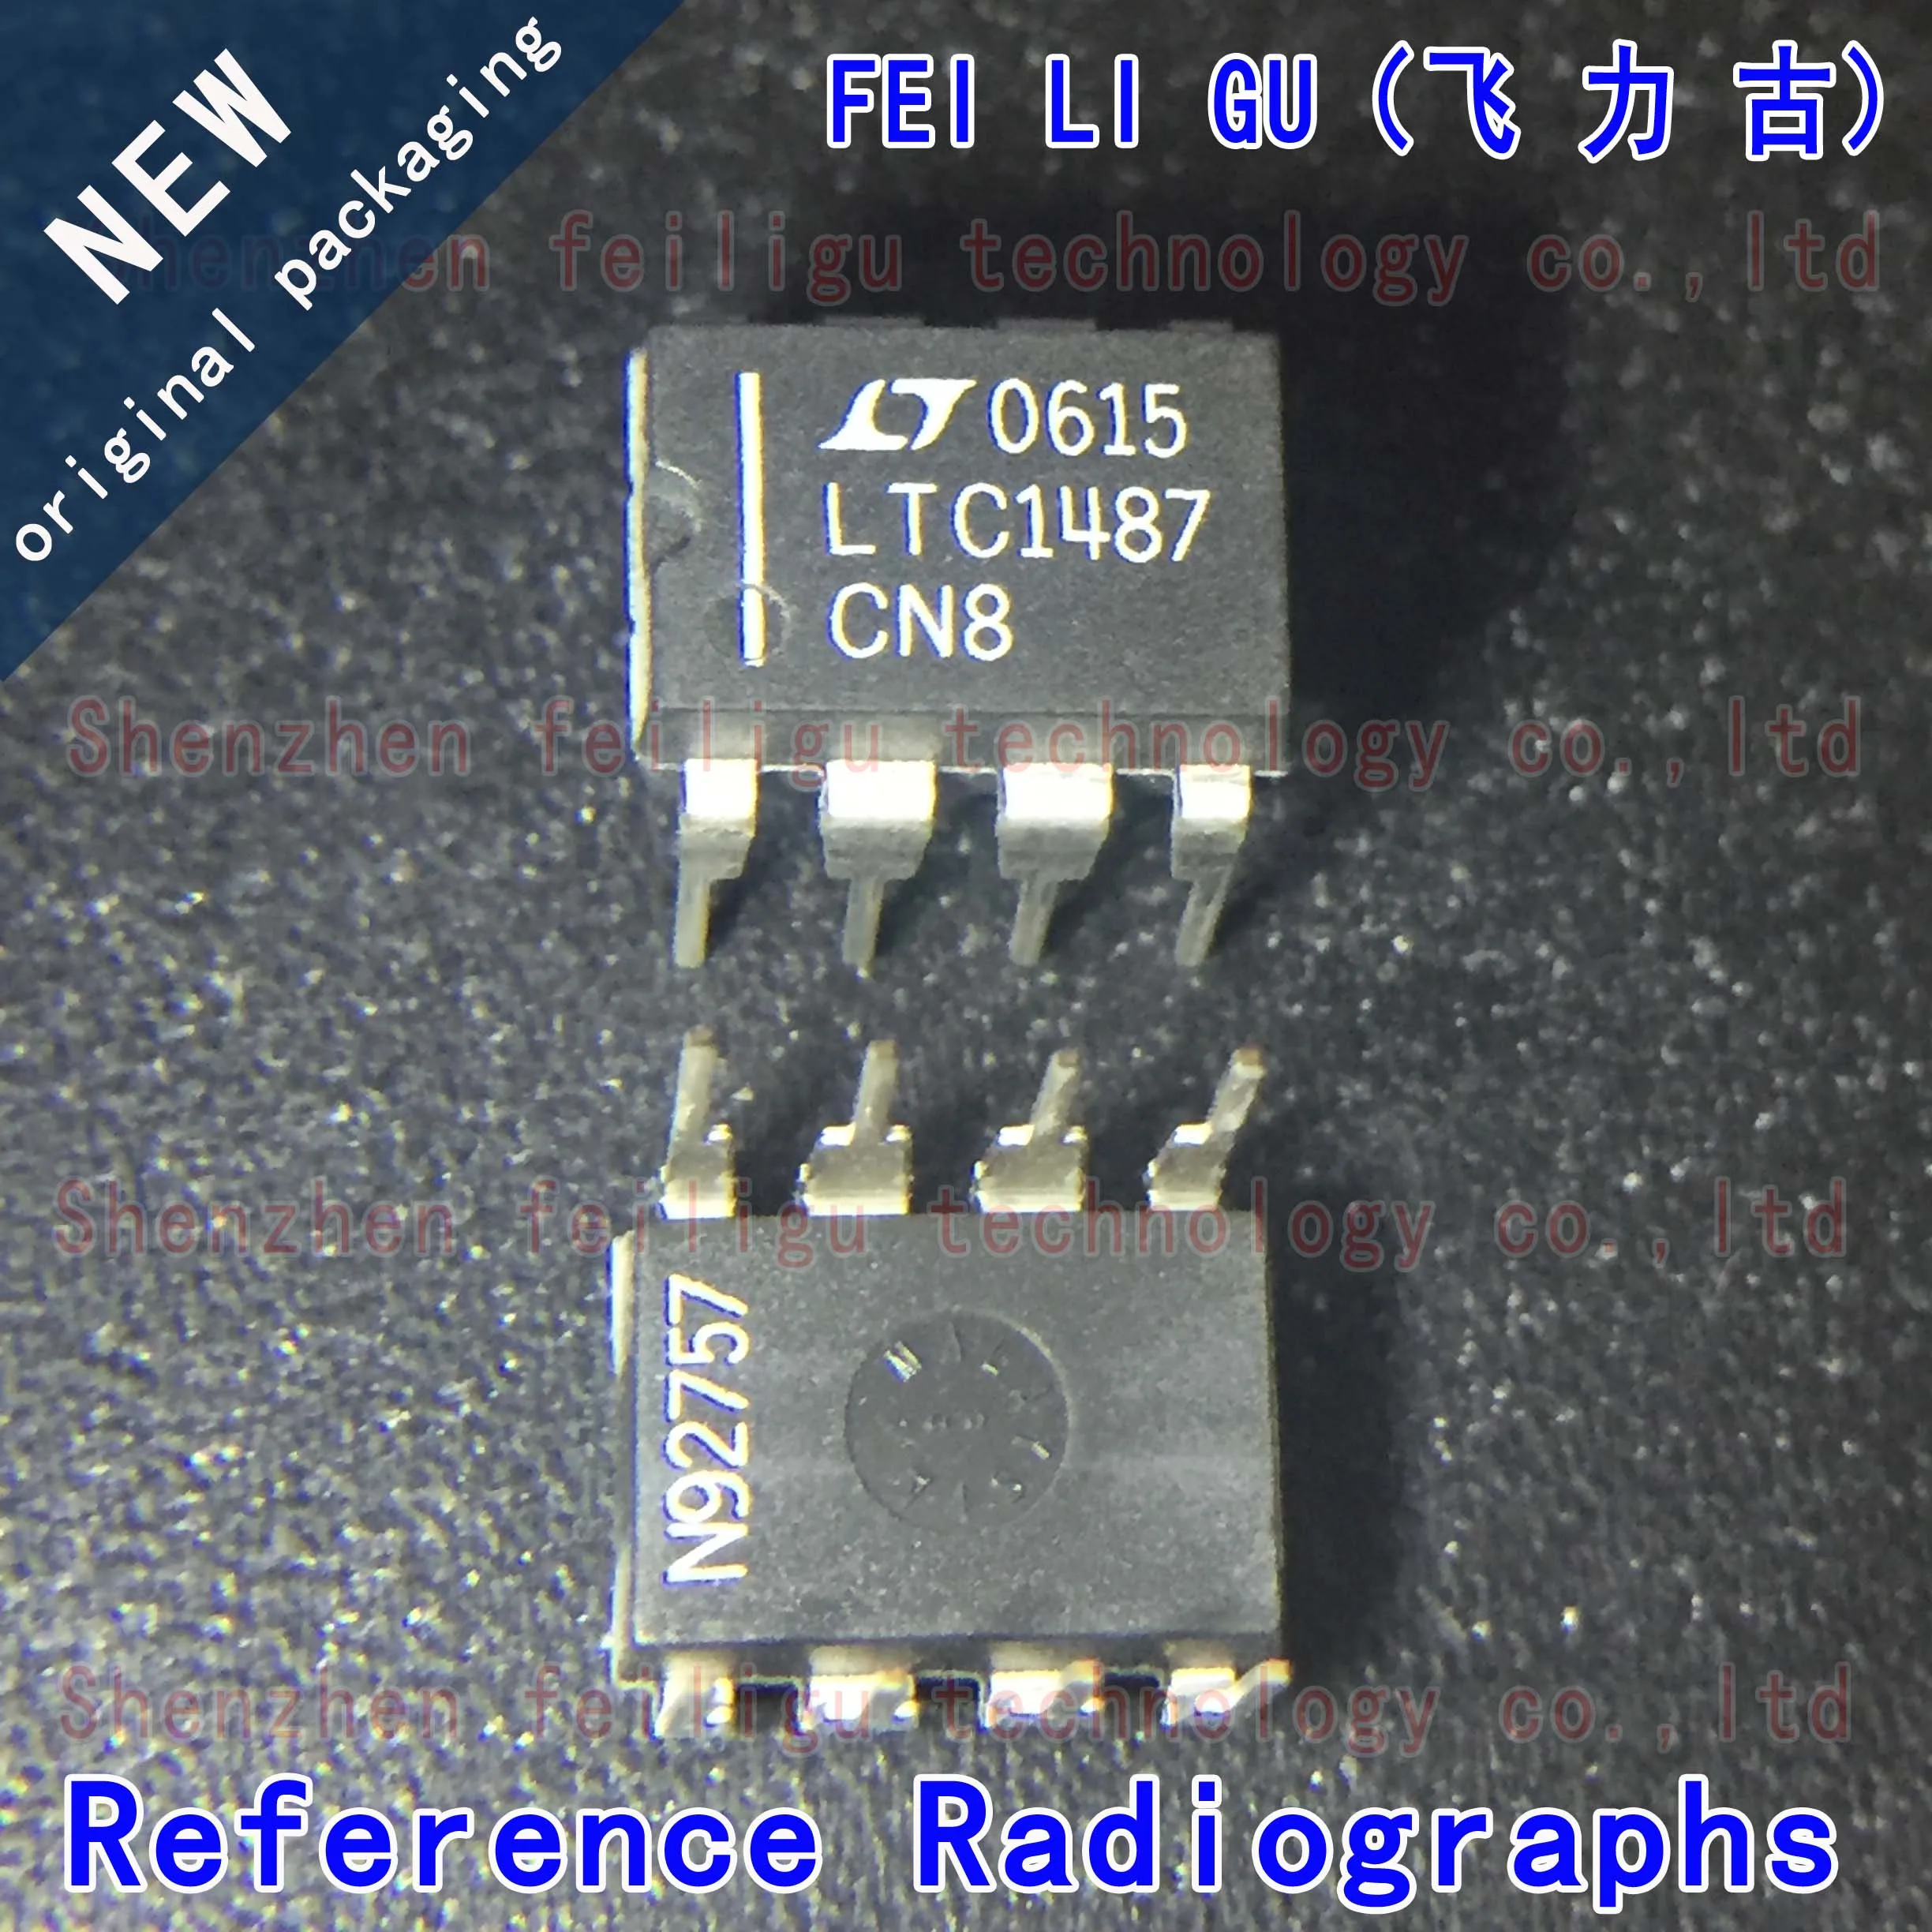 1~30PCS 100% New original LTC1487CN8#PBF LTC1487CN8 LTC1487 Package:DIP8 Inline RS-485/RS-422 Transceiver Chip 1 30pcs 100% new original opa2277pa opa2277p opa2277 package dip8 inline operational amplifier chip electronic components